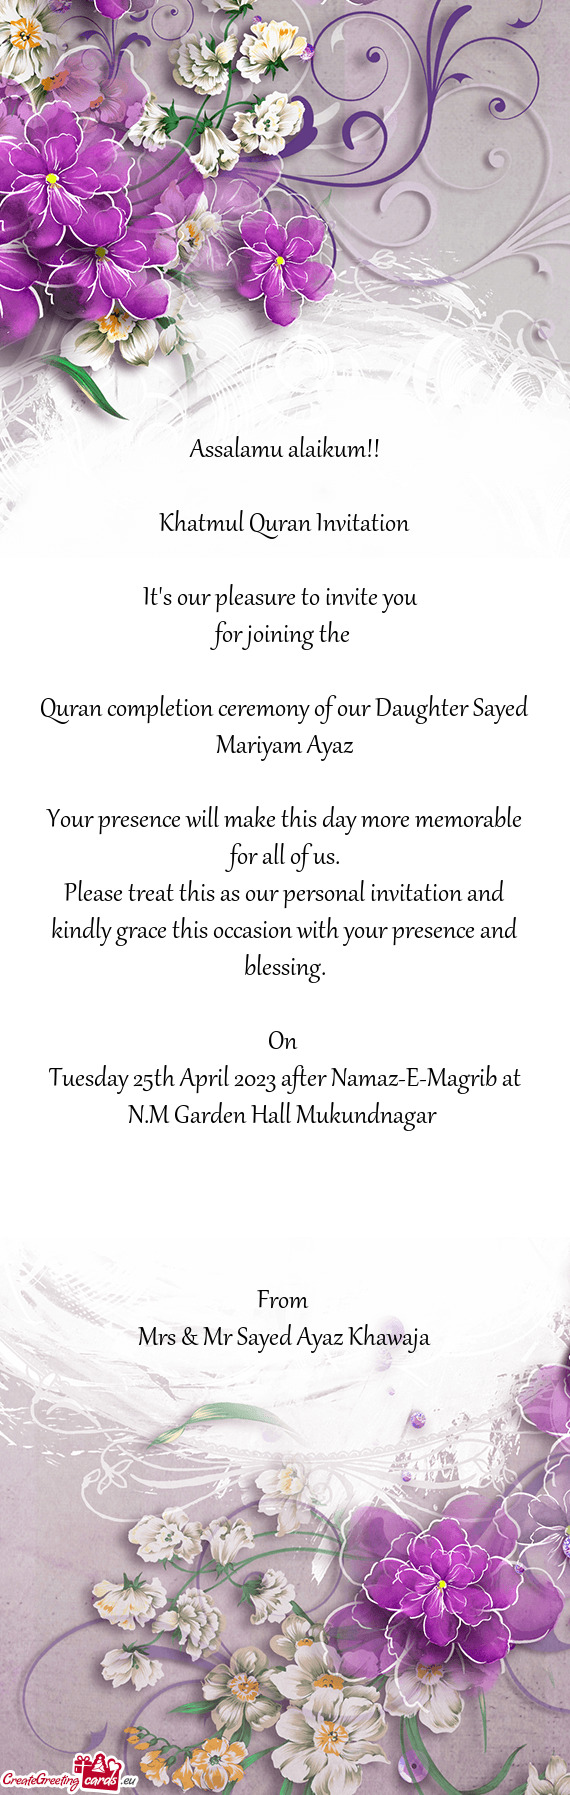 Tuesday 25th April 2023 after Namaz-E-Magrib at N.M Garden Hall Mukundnagar